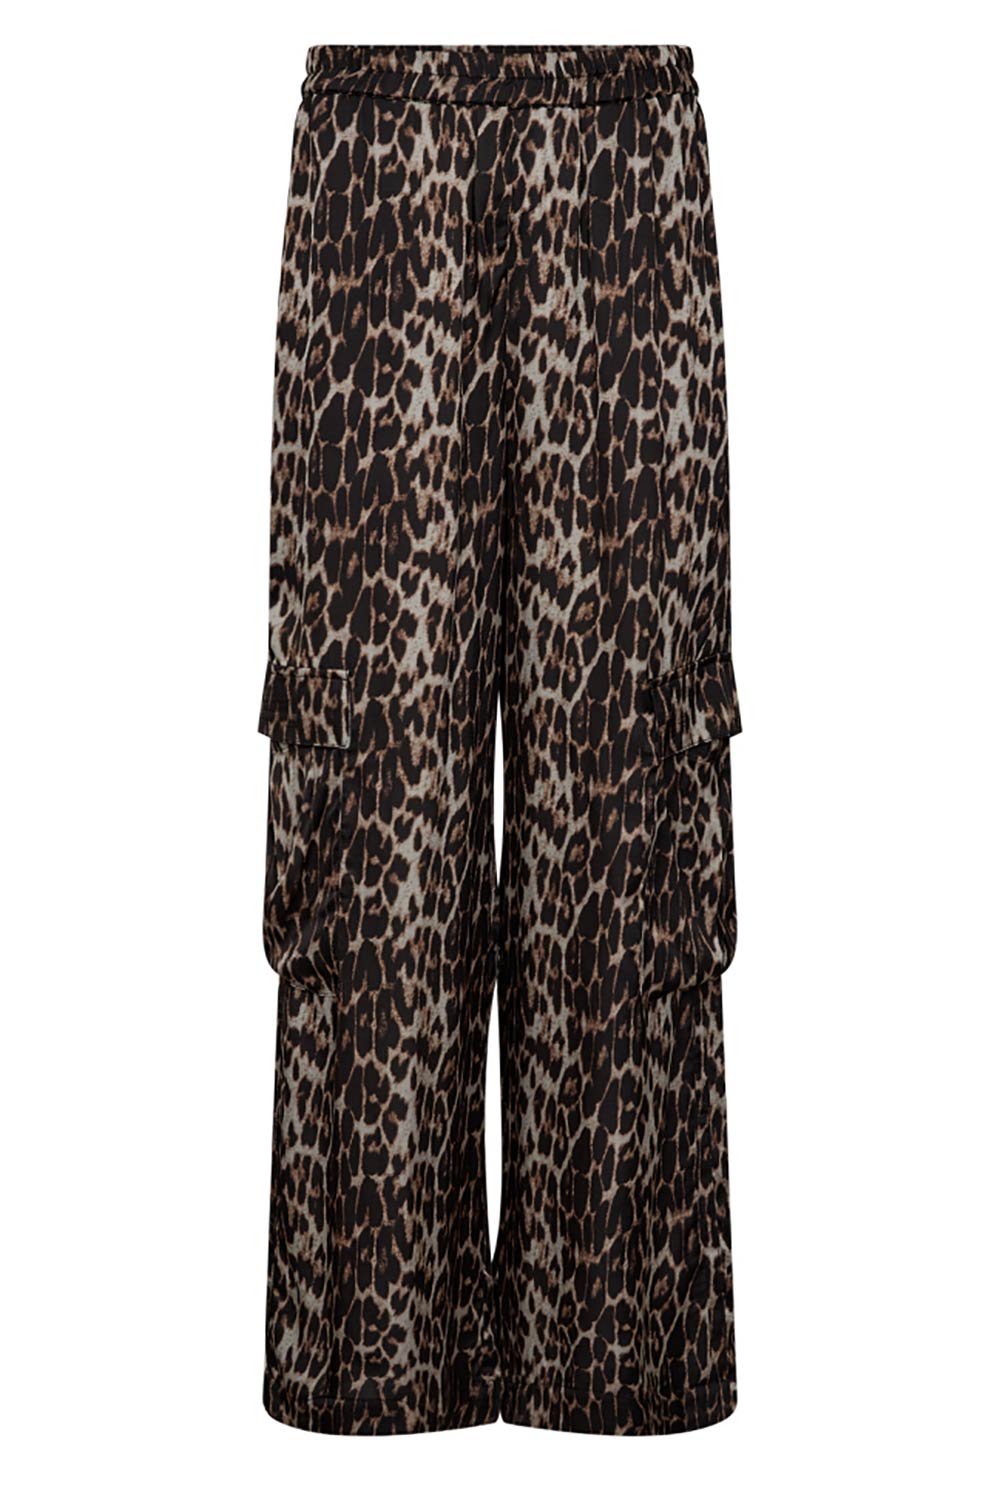 Co'Couture Leopard print cargo broek Leoleo dierenprint